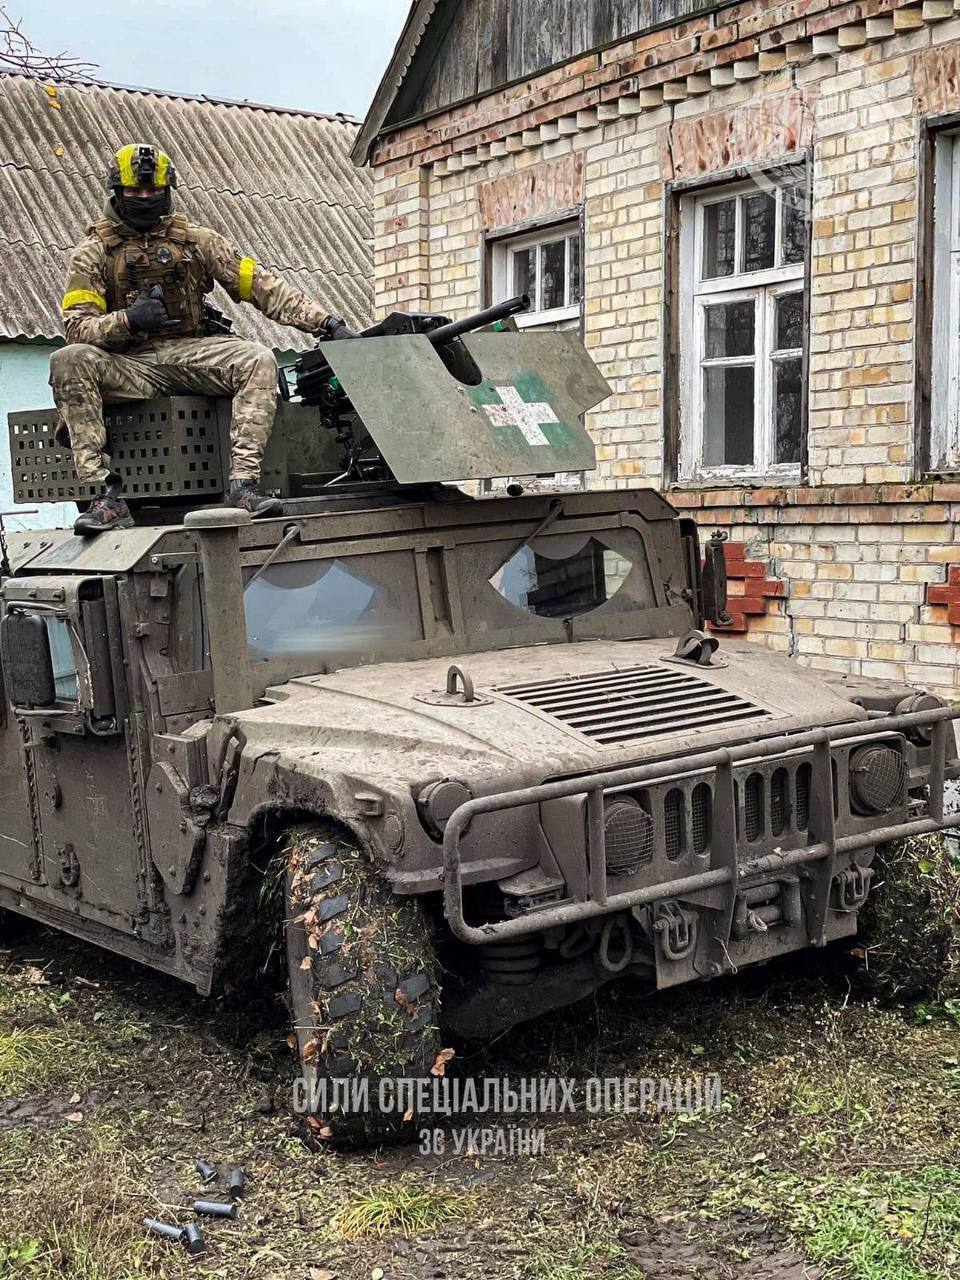 Сили спеціальних операцій - Телеграм сил спеціальних операцій - війна в Україні